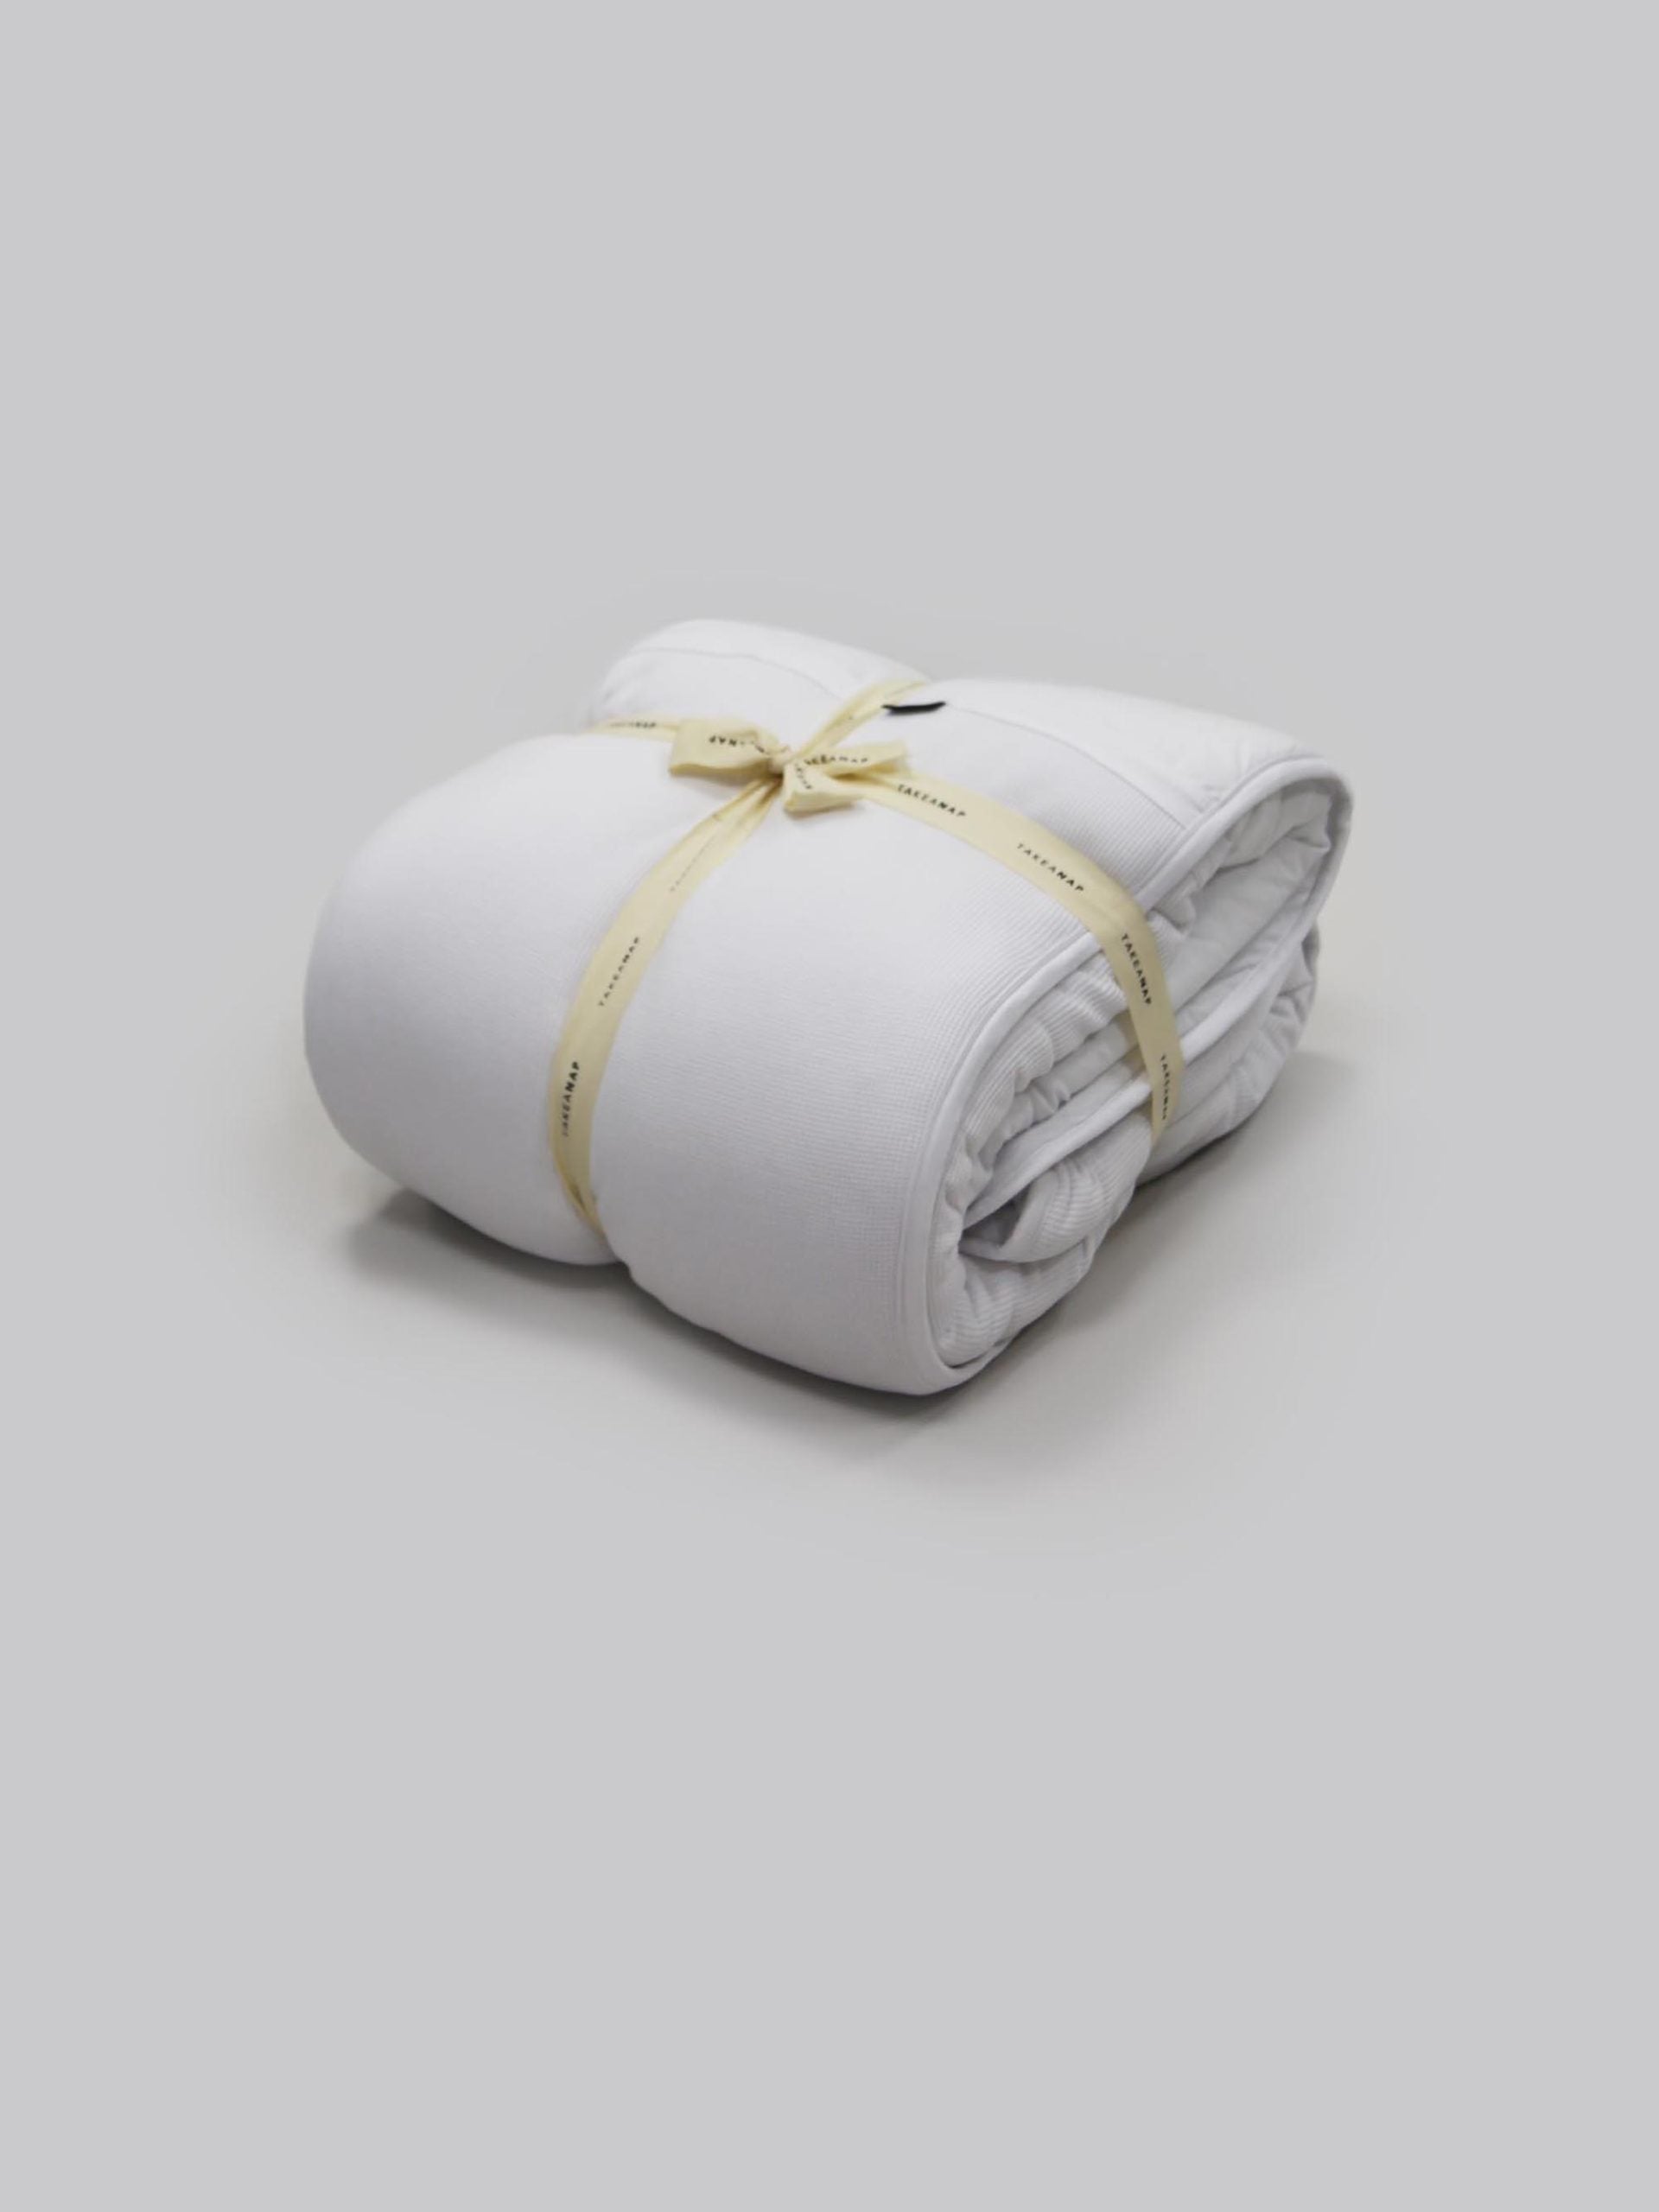 שמיכה מהוליפייבר בצבע לבן על רקע אפור